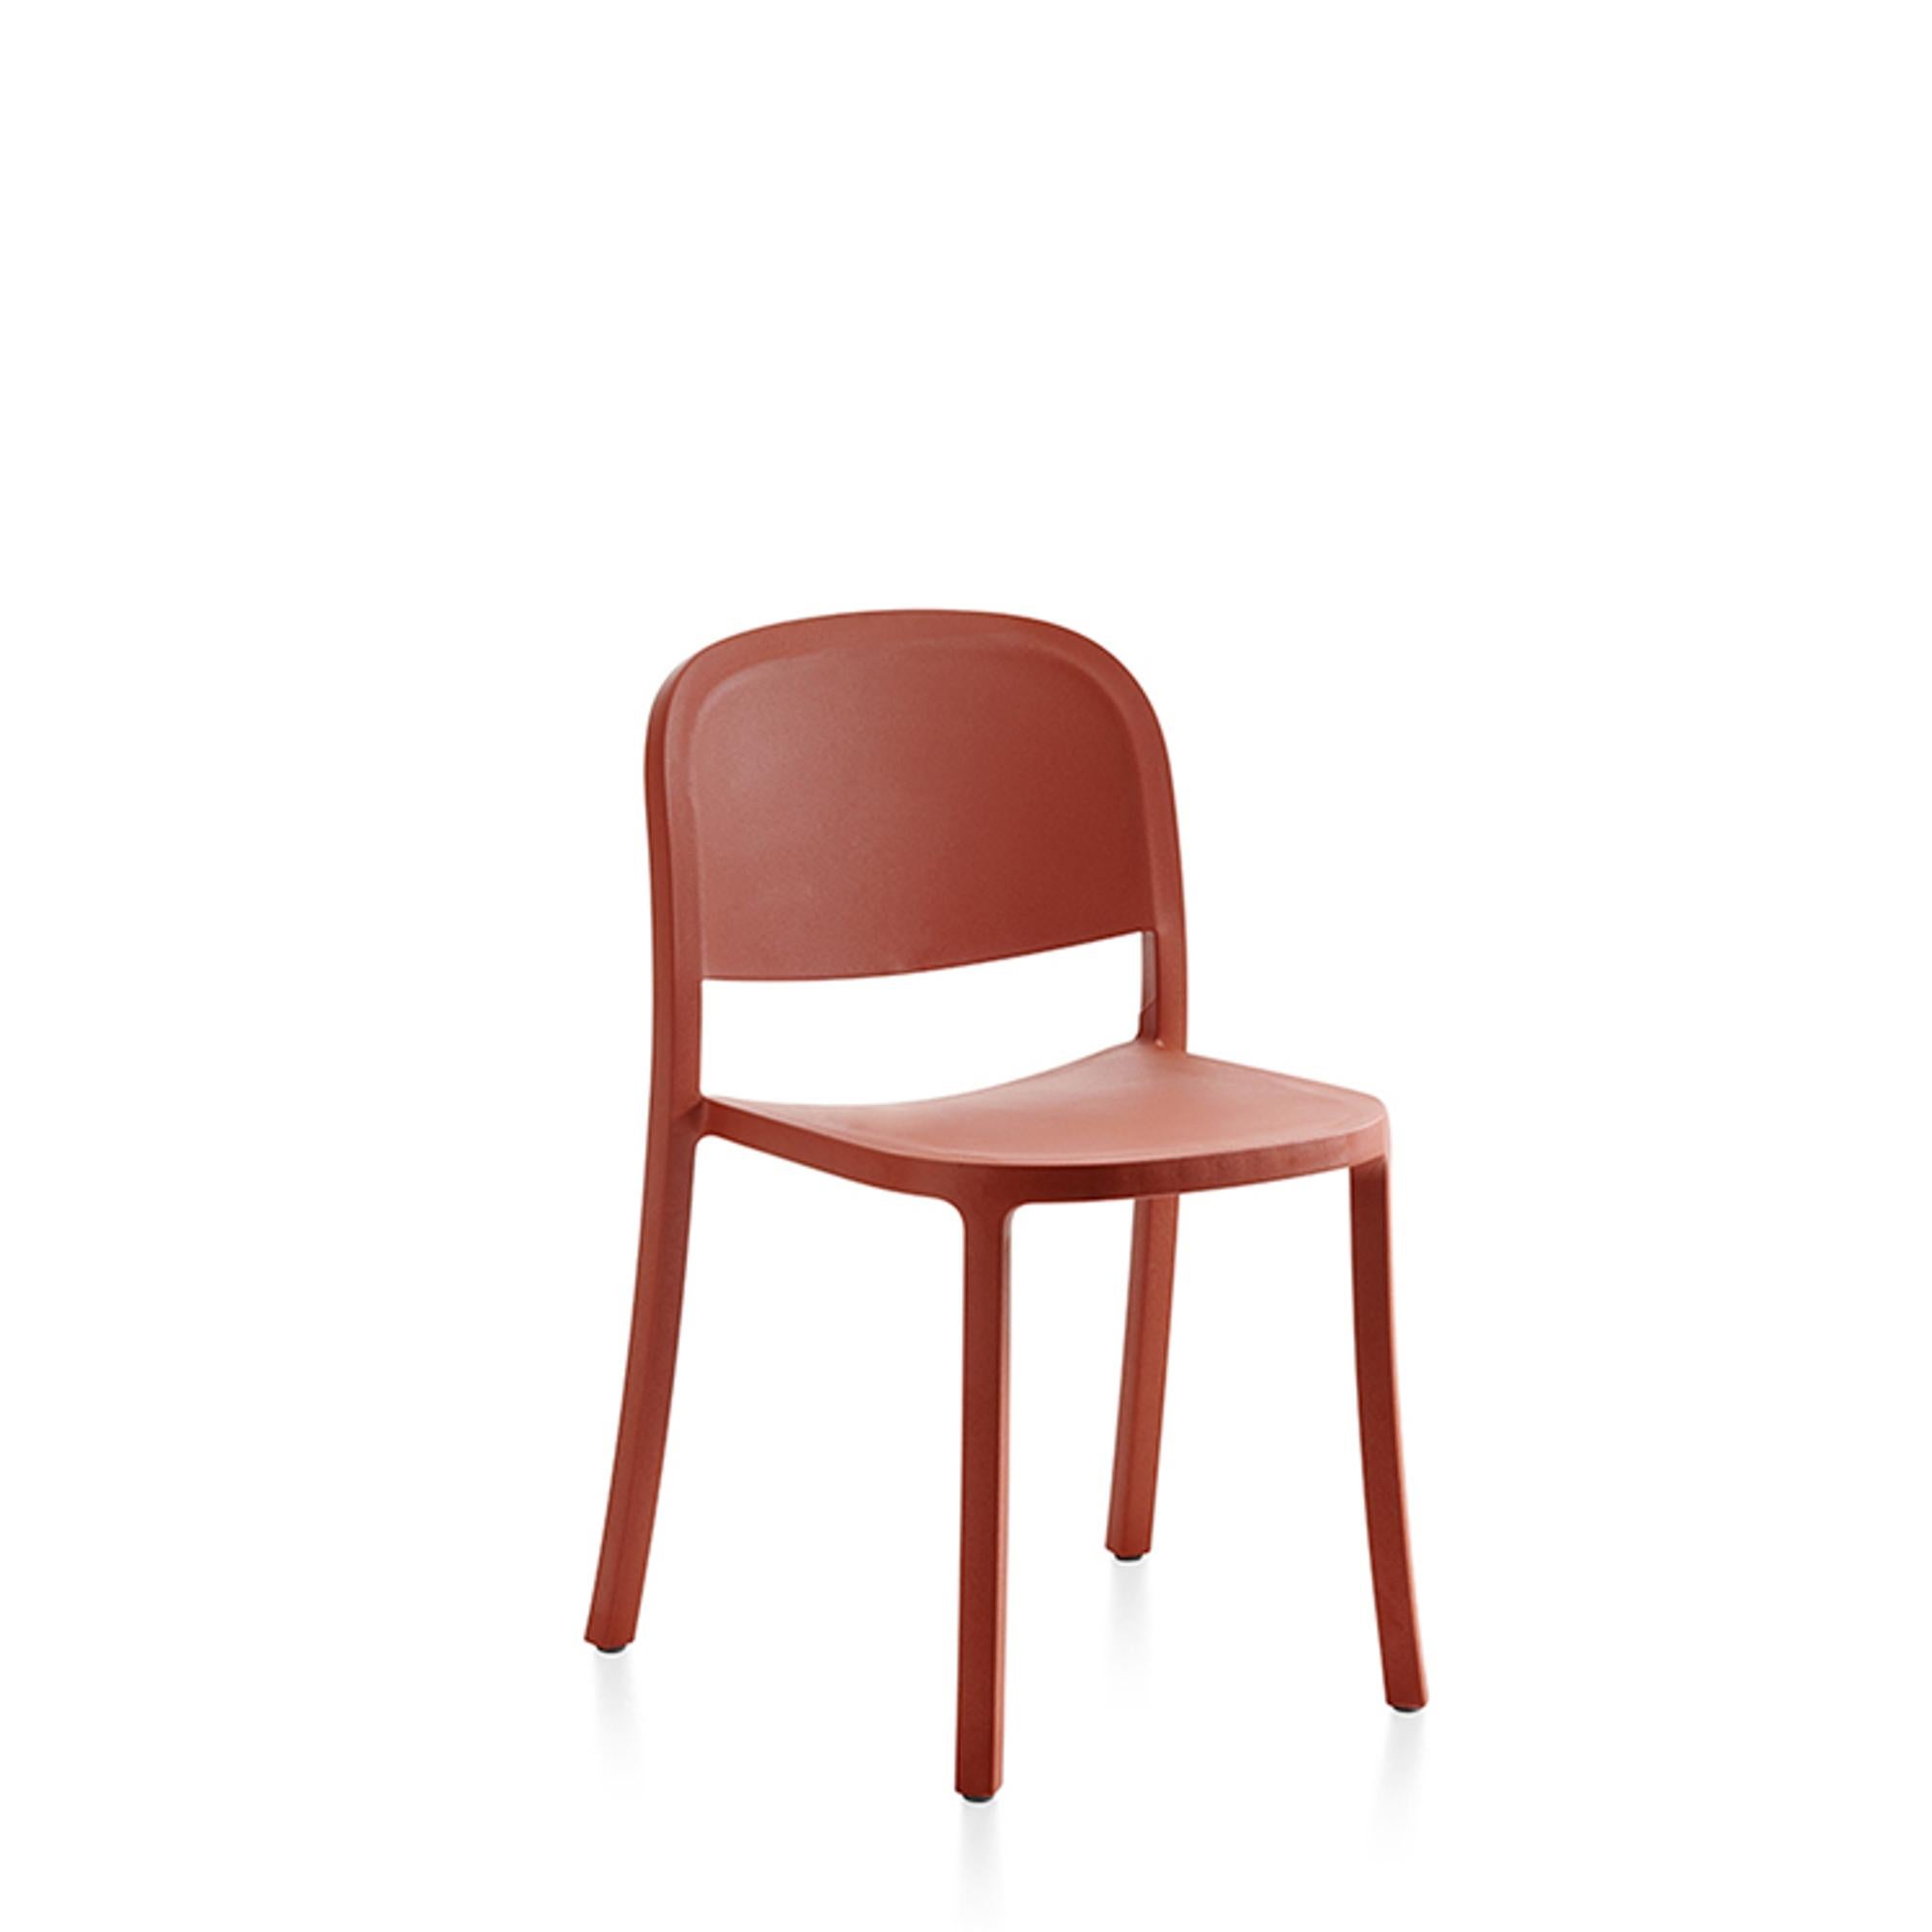 Für den 1 Inch Reclaimed entwarf Jasper Morrison einen einteiligen, stapelbaren Monoblock-Stuhl, der nützlich und langlebig ist, den Anforderungen einer stark beanspruchten Umgebung gerecht wird und sowohl für den Innen- als auch für den